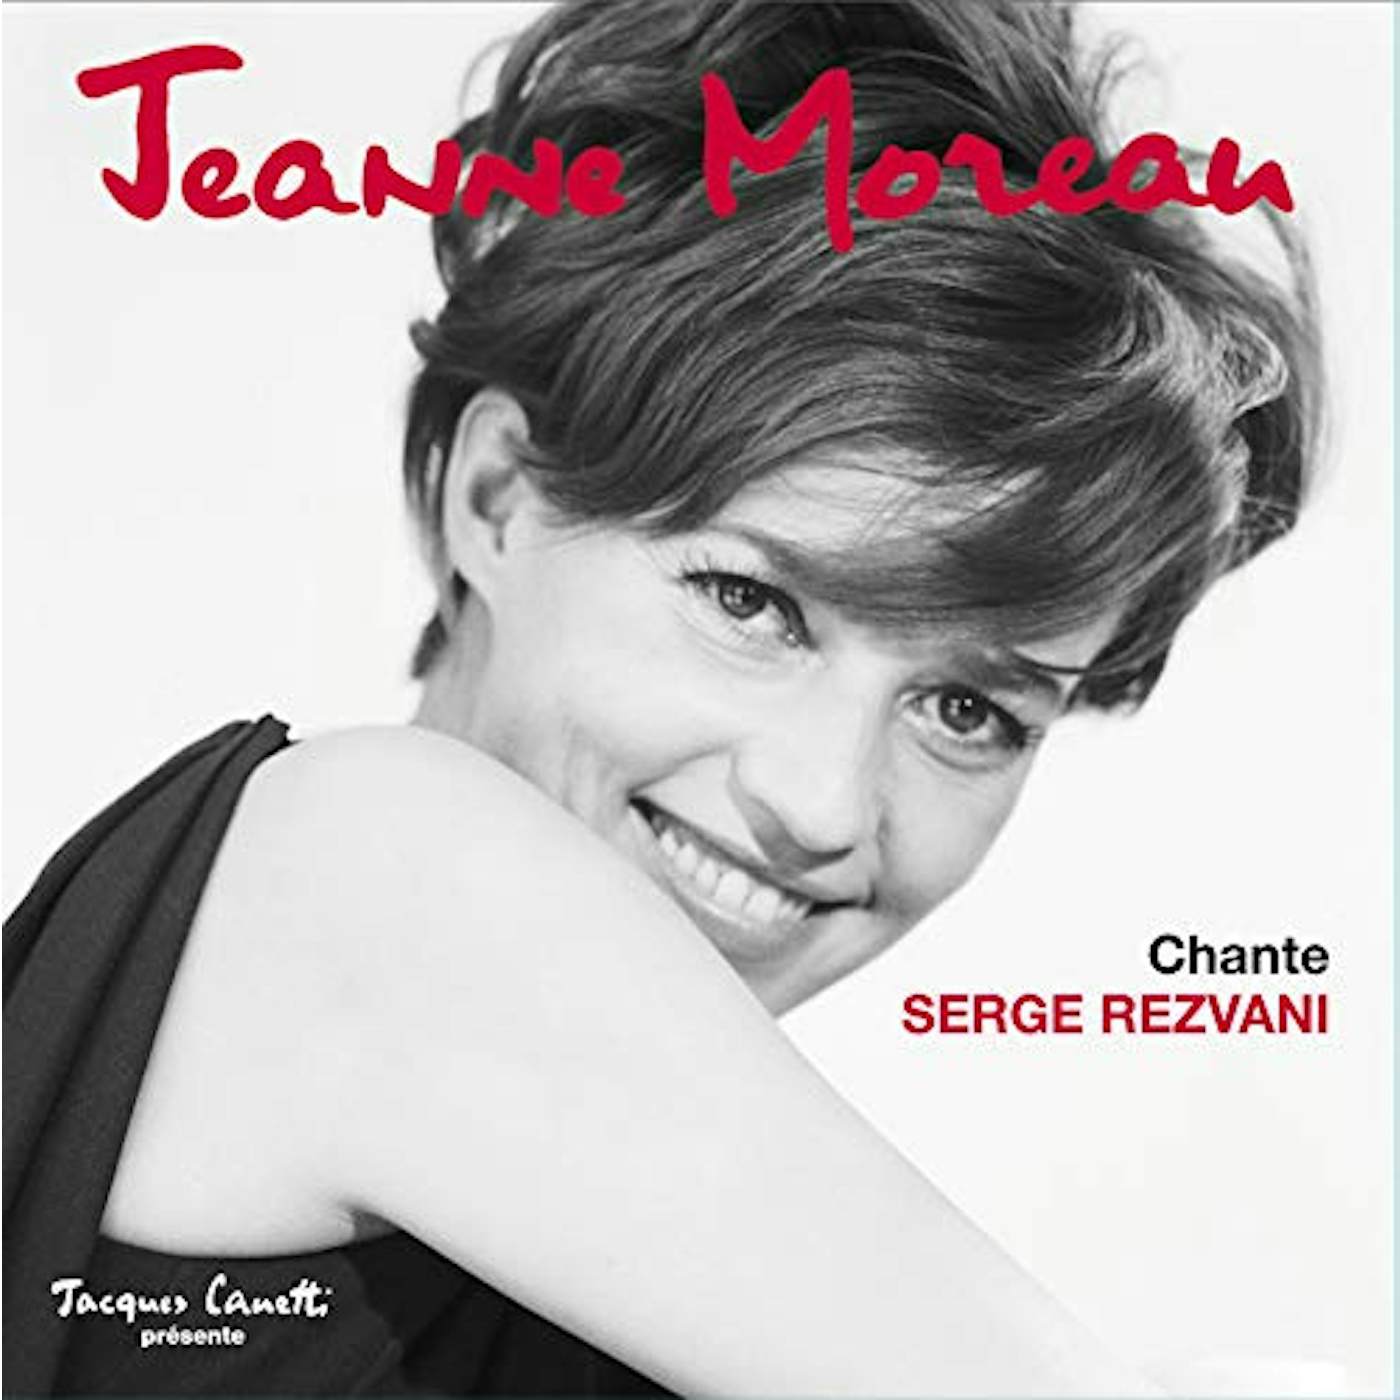 Jeanne Moreau CHANTE SERGE REZVANI Vinyl Record